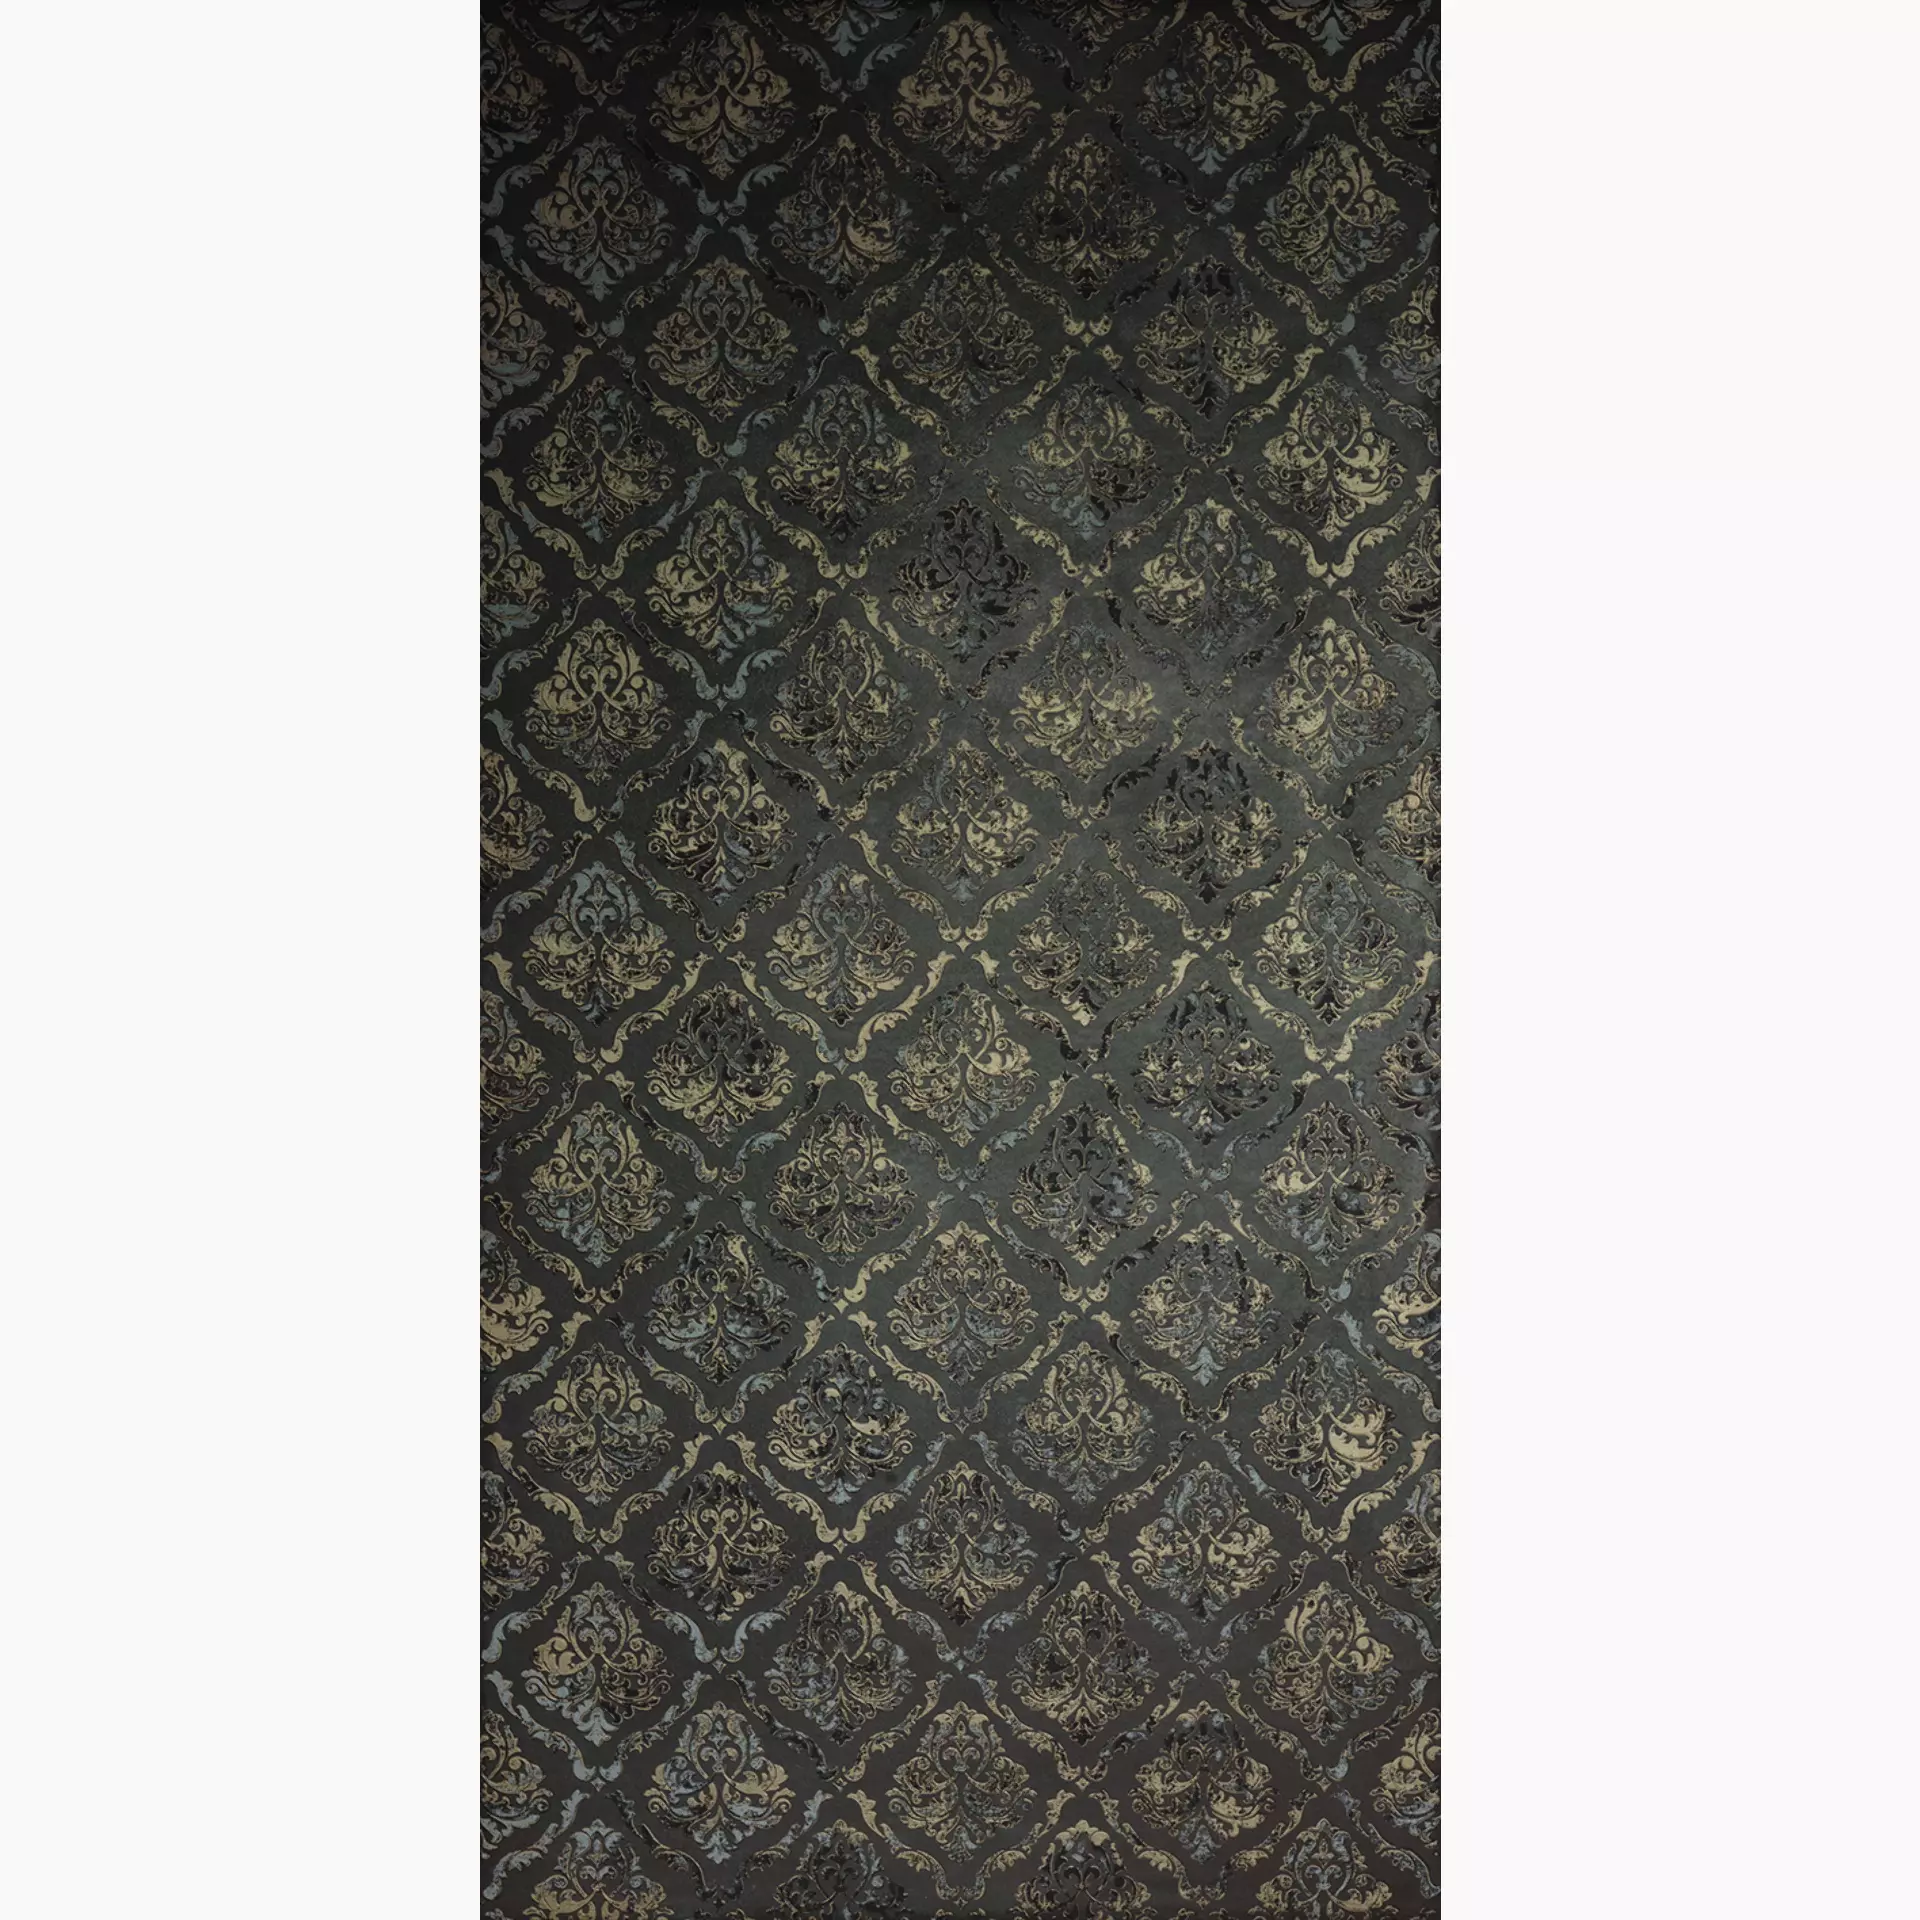 Cercom Infinity Moka – Gold Wax Decor Damasco 1073832 60x120cm rectified